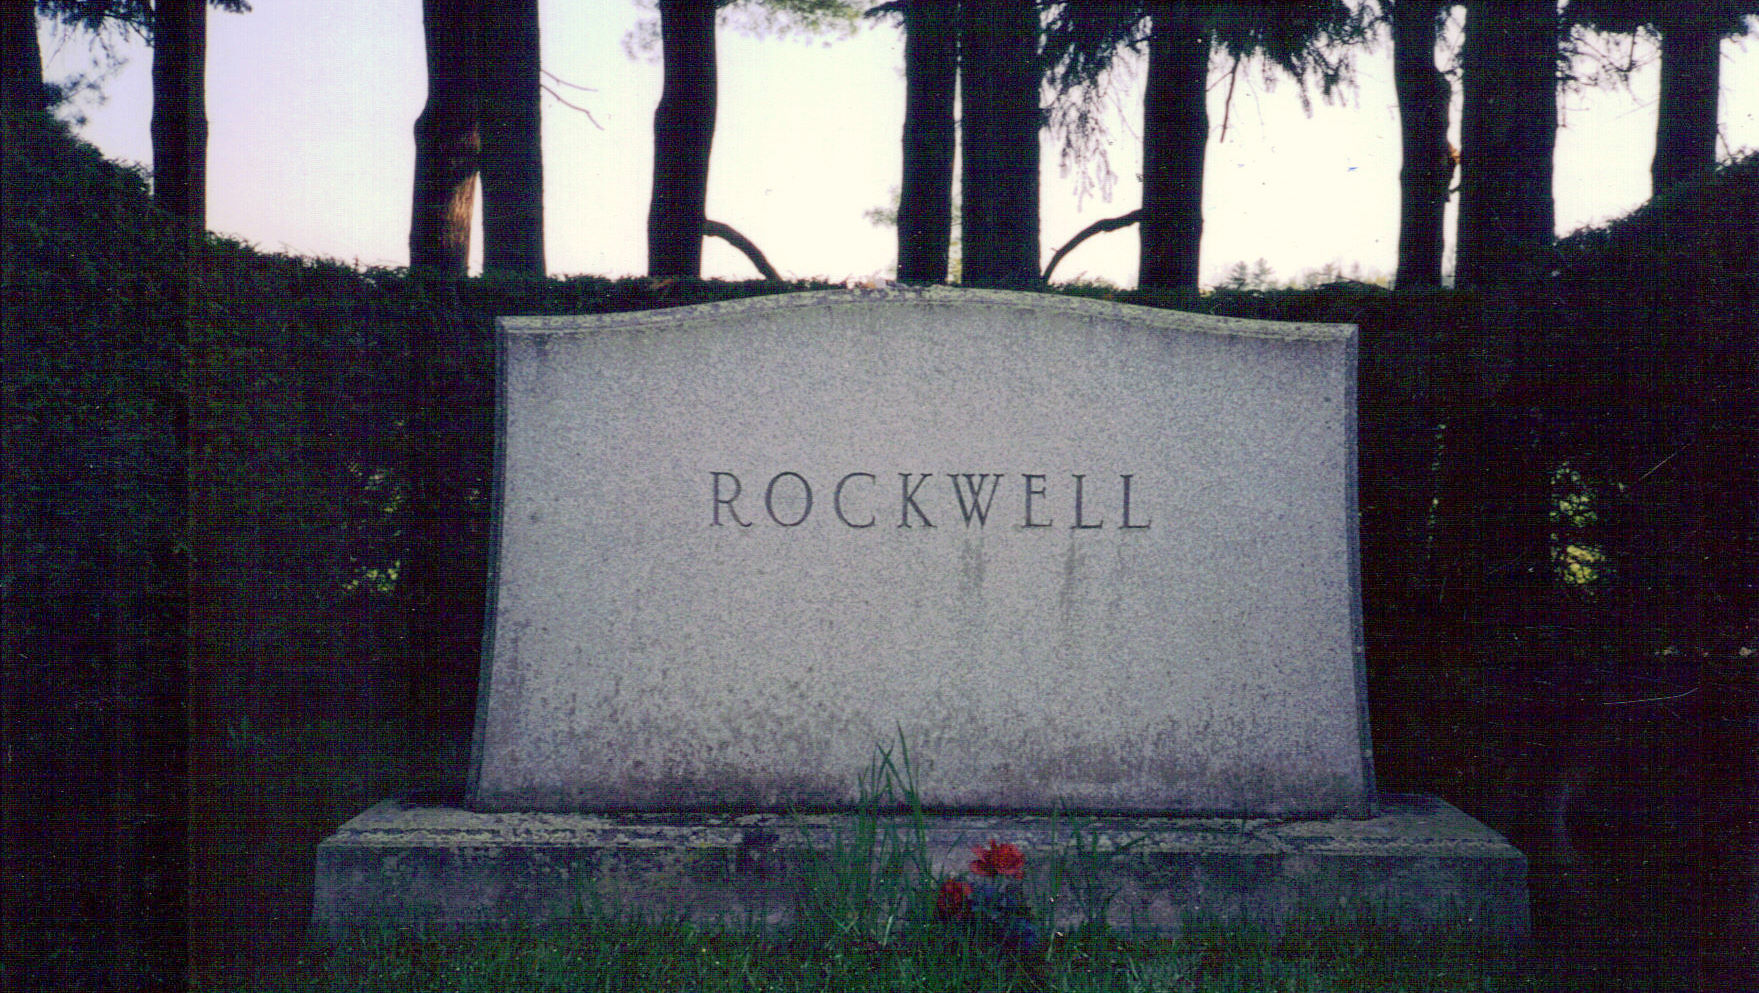     Norman Rockwell Monument  Main St. Cemetery, Stockbridge, Massachusetts 